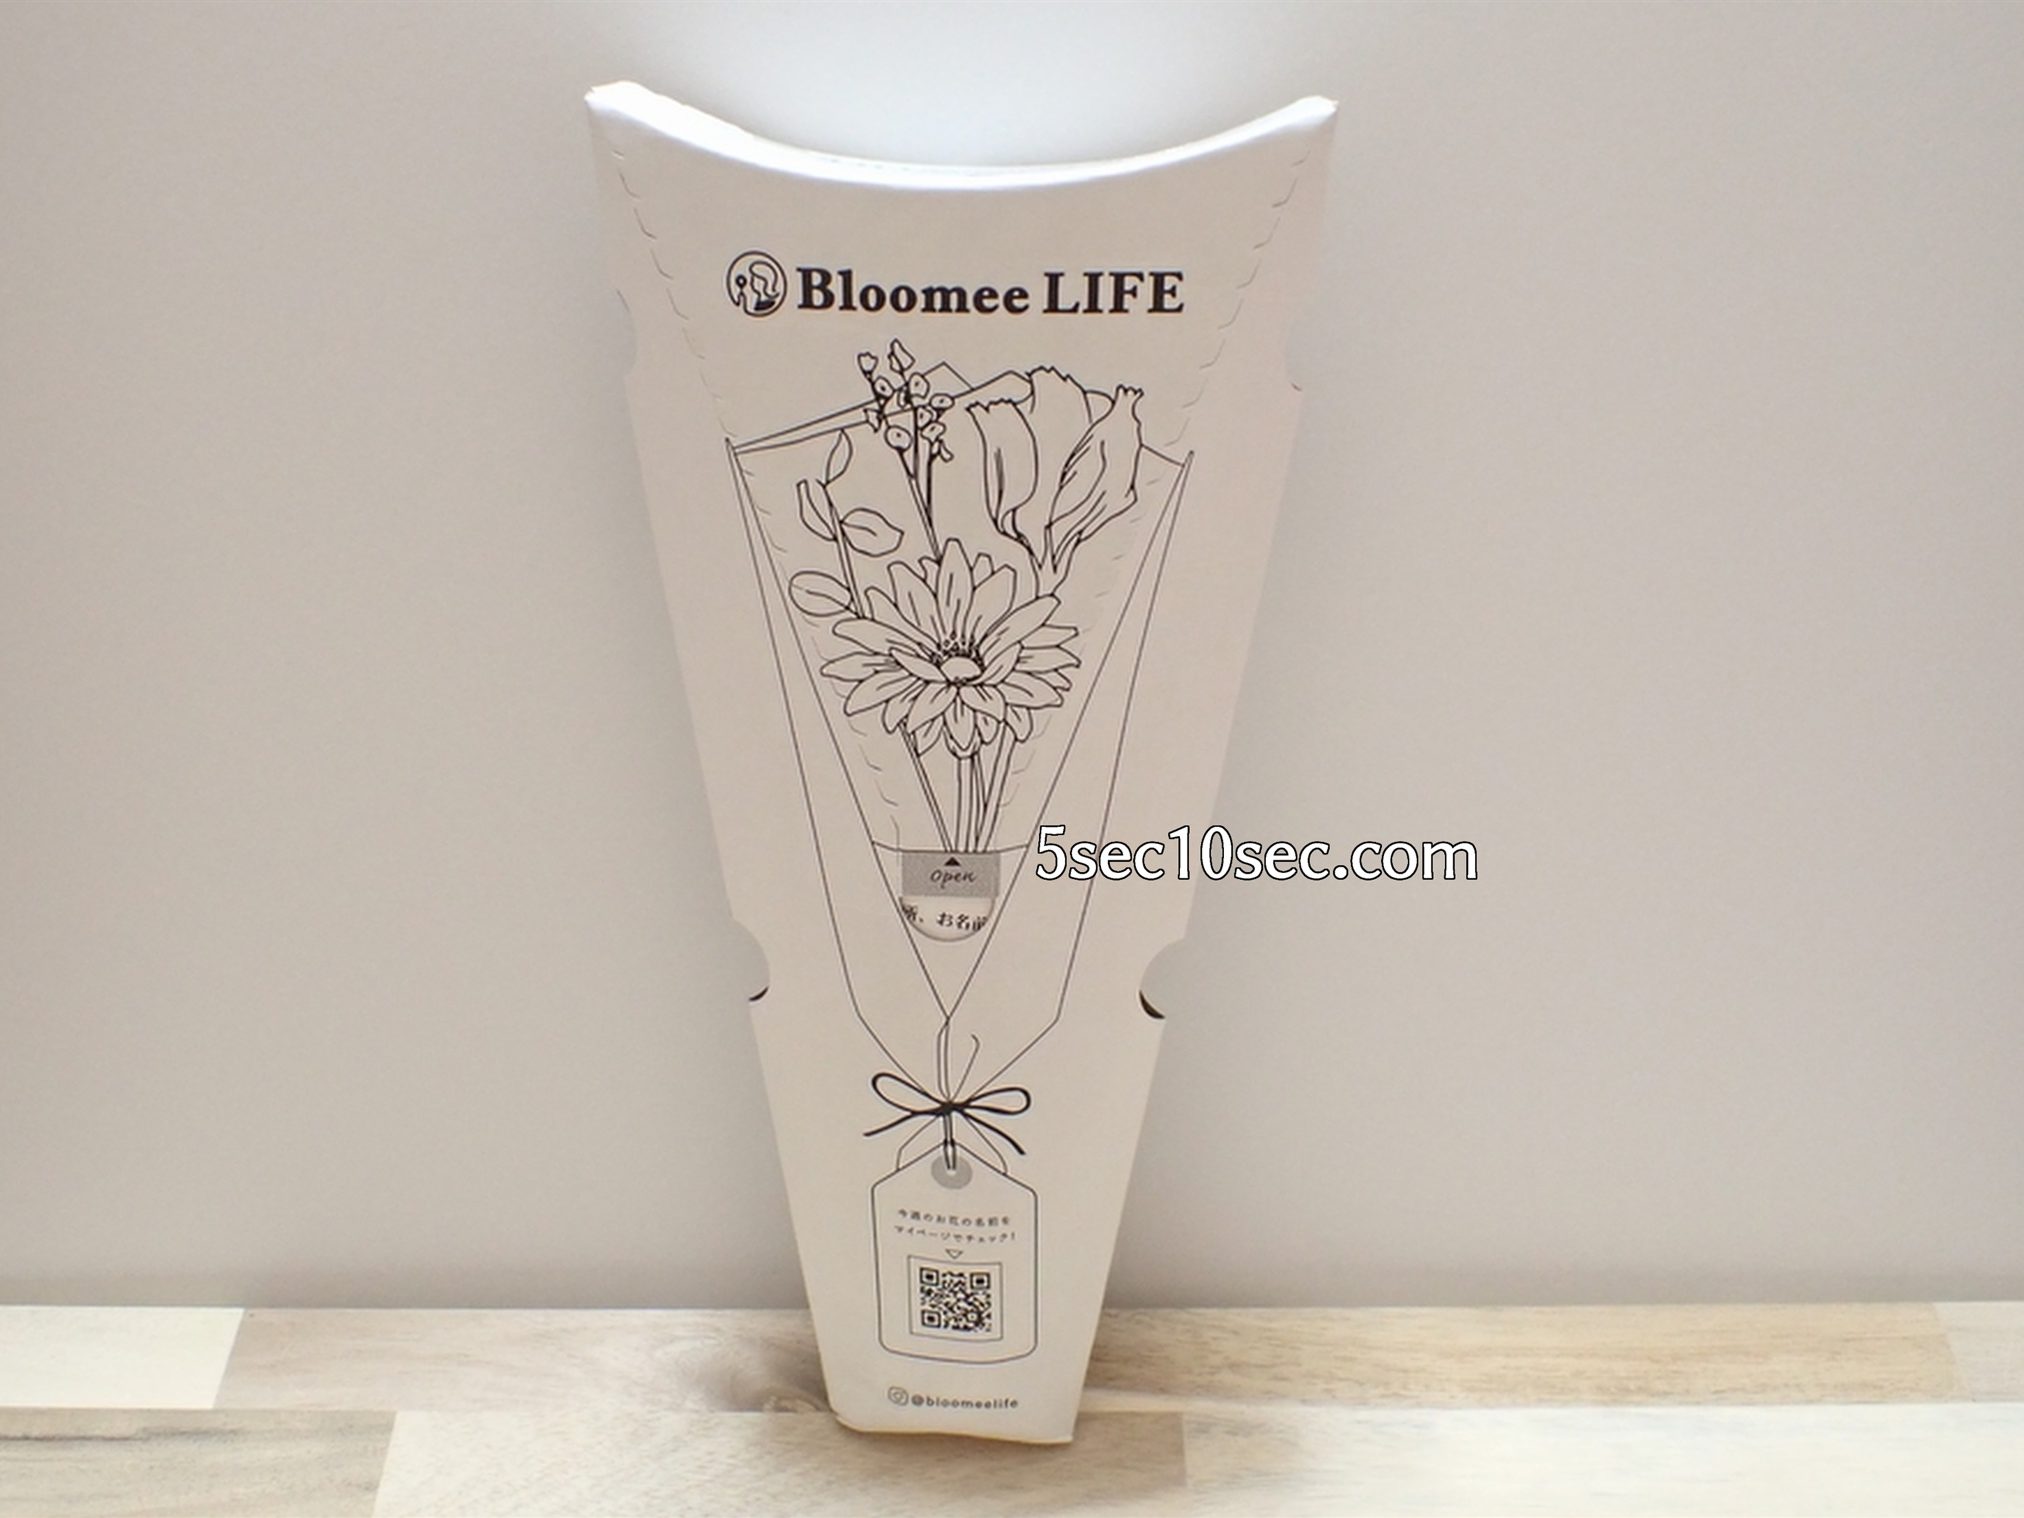 株式会社Crunch Style お花の定期便 Bloomee LIFE ブルーミーライフ 2020年11月下旬に届いたパッケージの写真